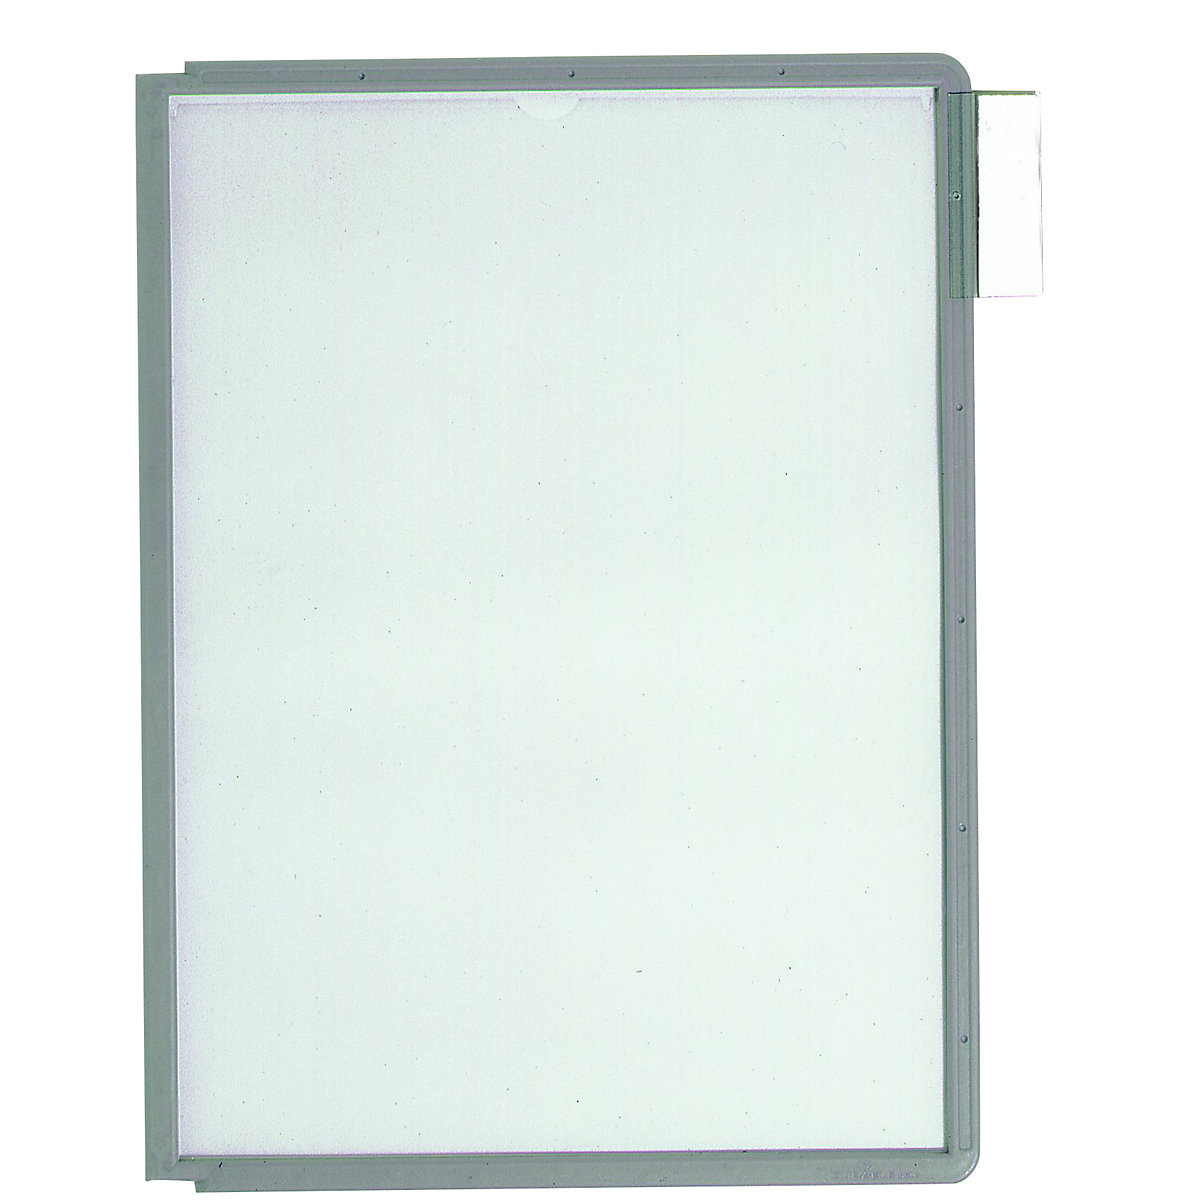 Pochette transparente avec cadre plastique – DURABLE, pour format A4, lot de 10, gris